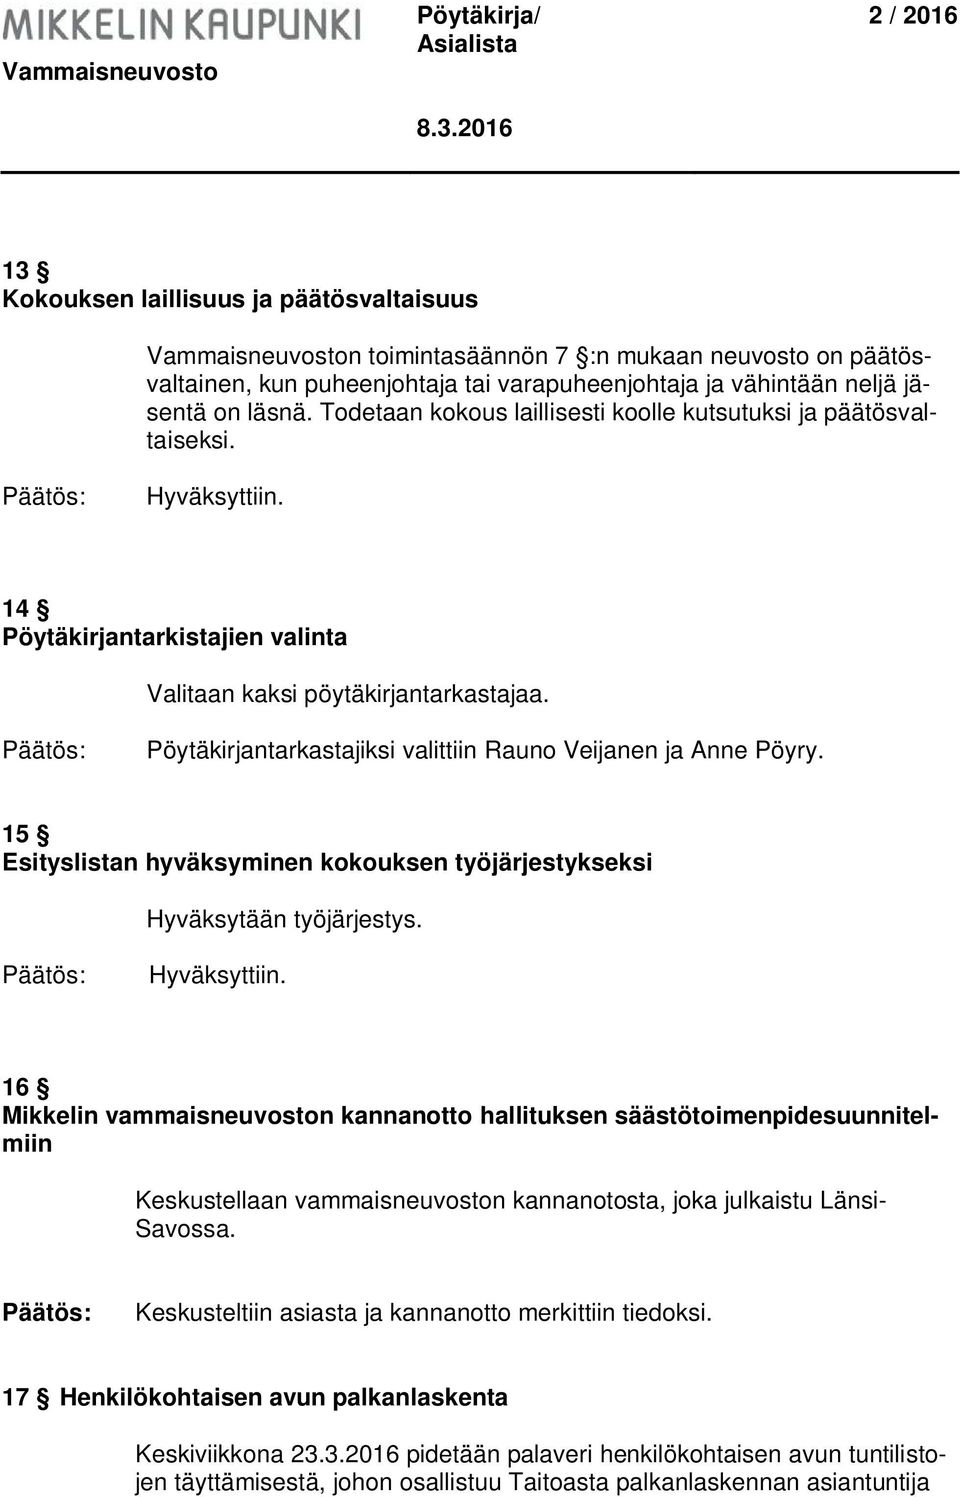 Pöytäkirjantarkastajiksi valittiin Rauno Veijanen ja Anne Pöyry. 15 Esityslistan hyväksyminen kokouksen työjärjestykseksi Hyväksytään työjärjestys. Hyväksyttiin.